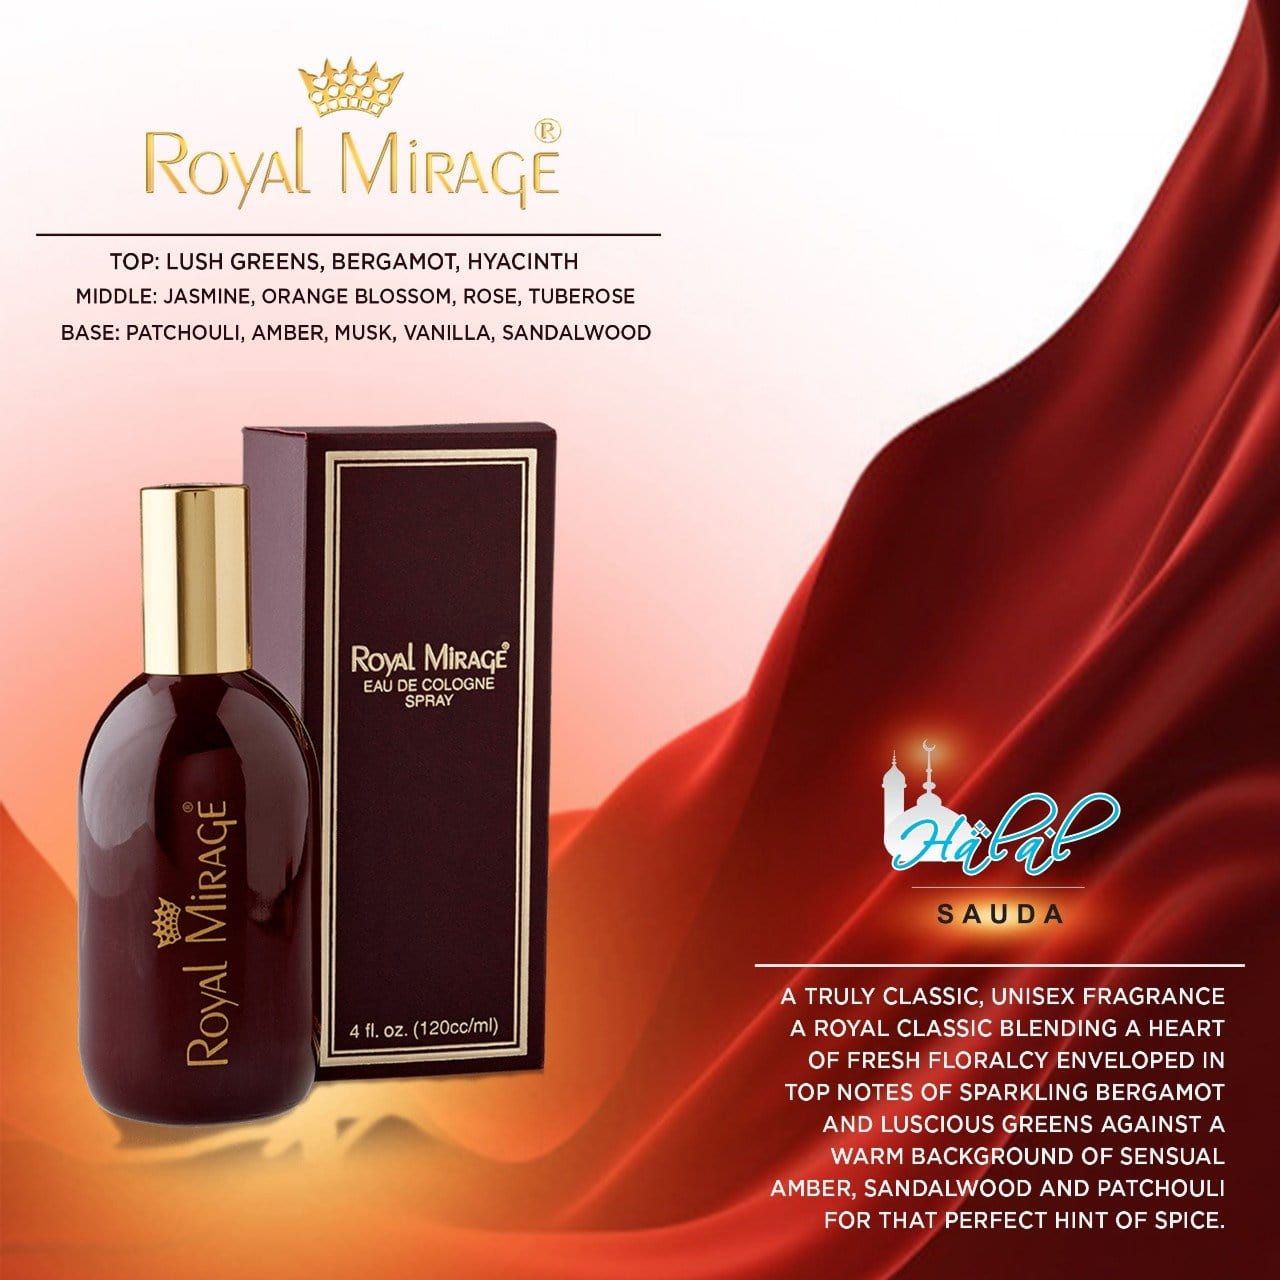 Royal Mirage Perfume Eau De Cologne